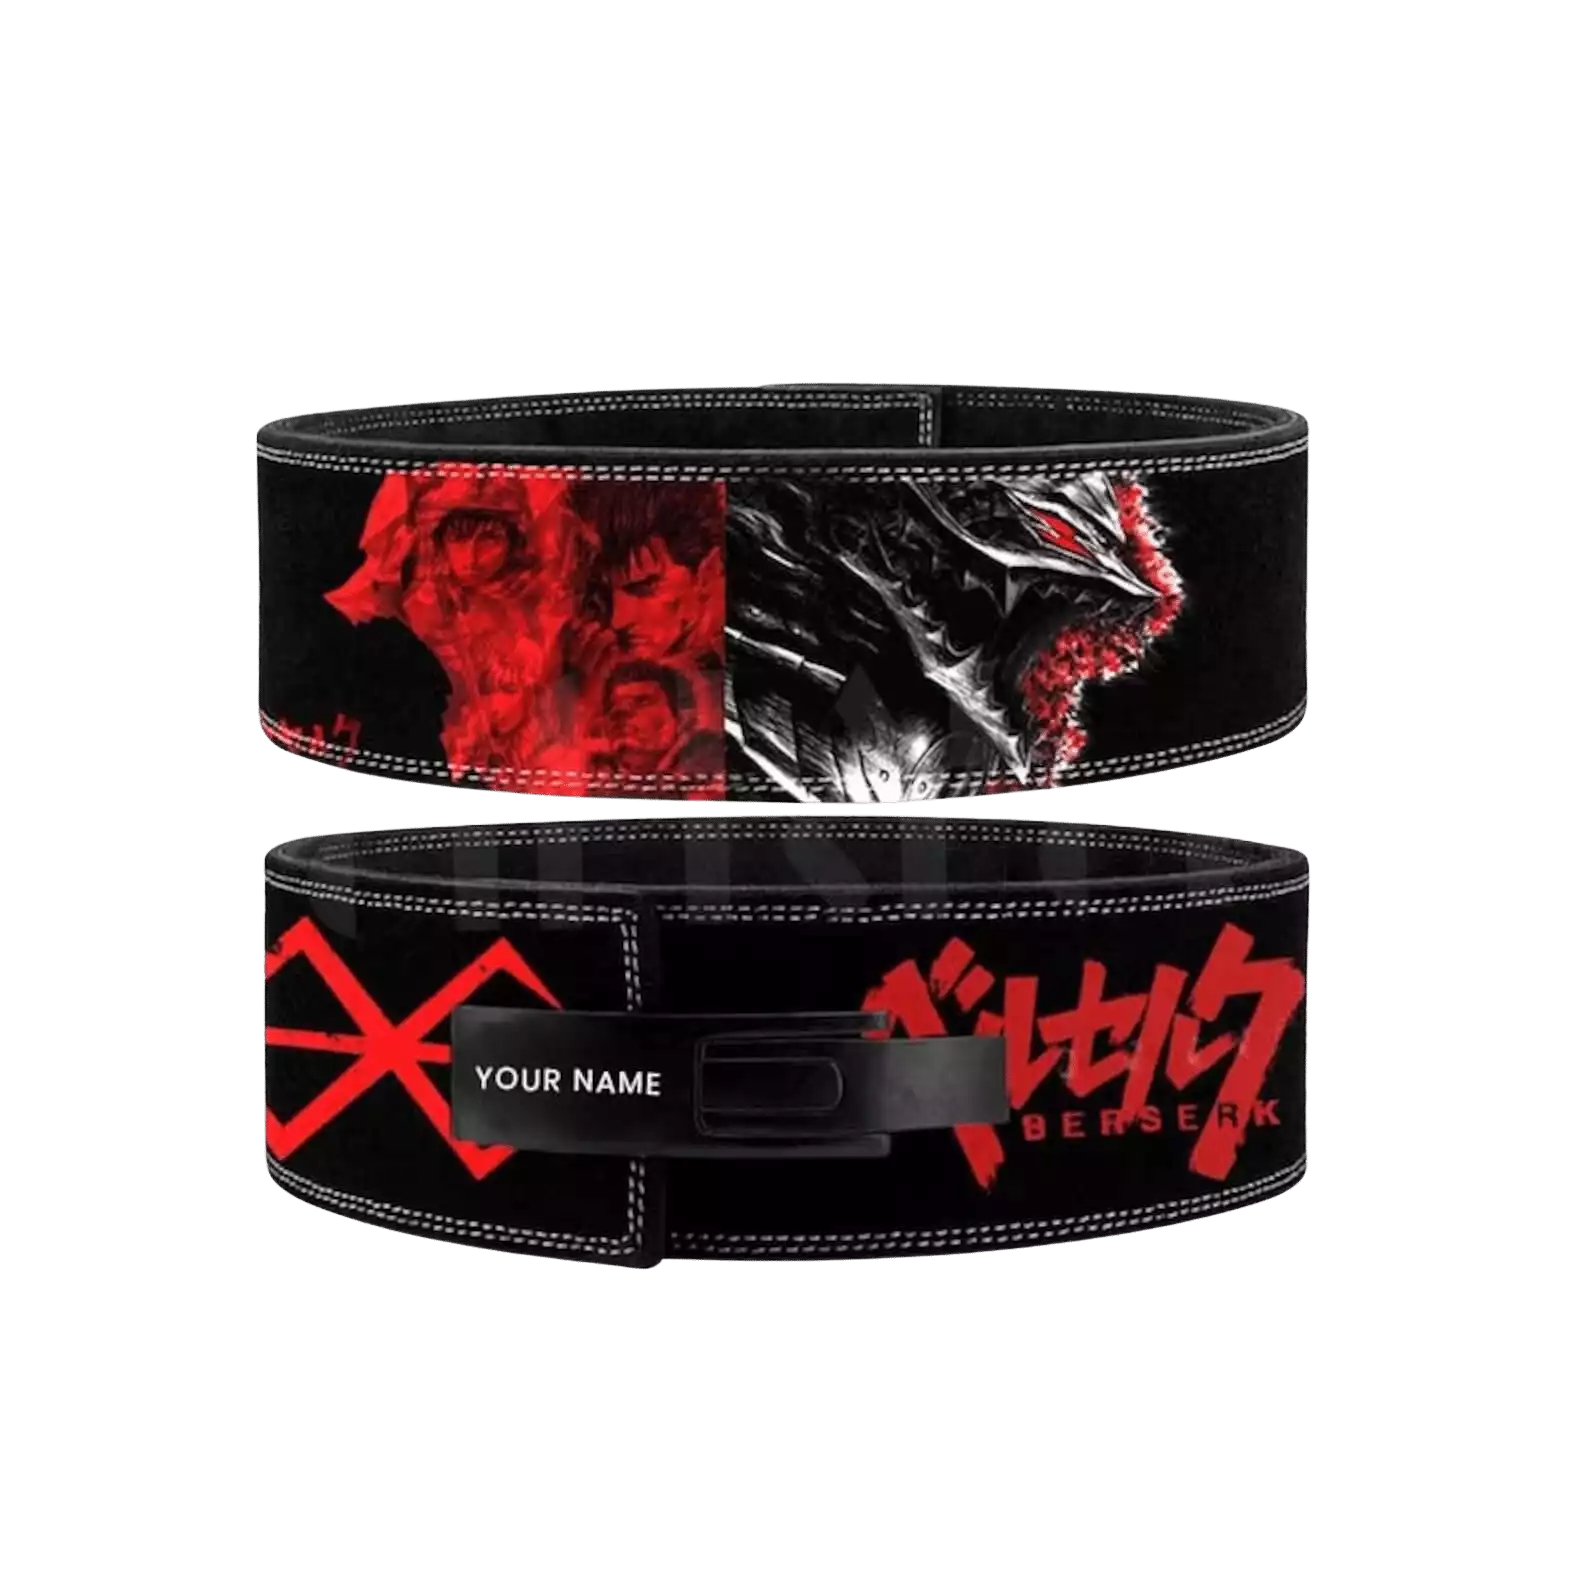 Berserk Red/Black Weightlifting Belt